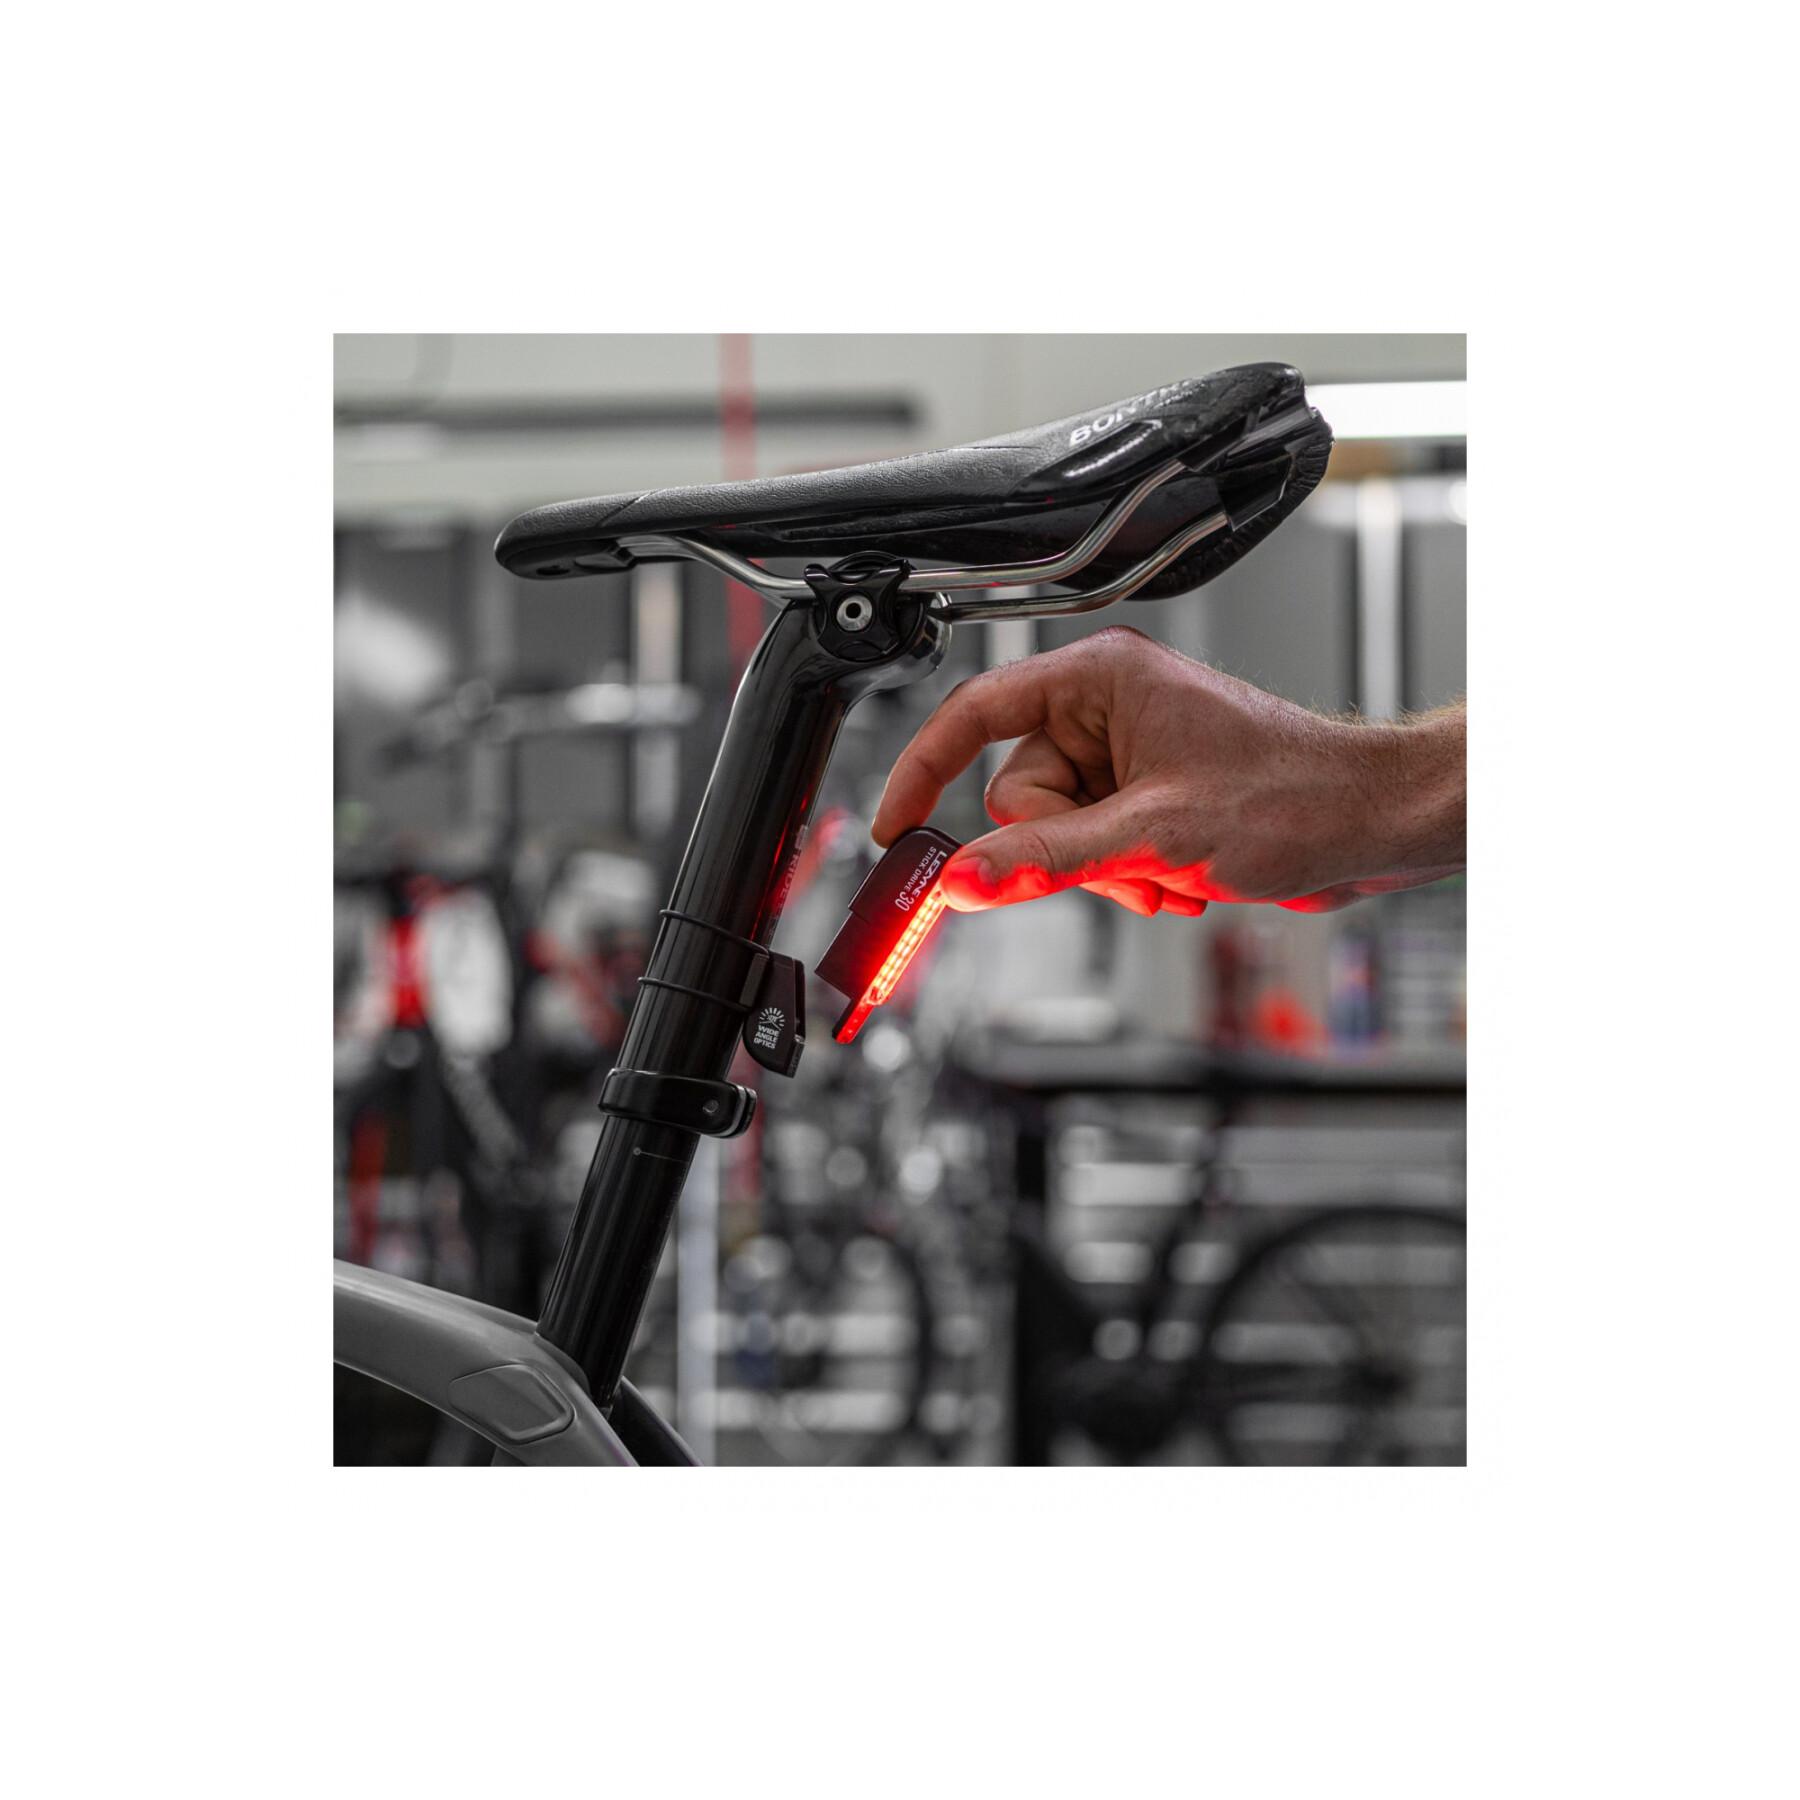 Eclairage vélo arrière Lezyne Stick Drive 30 lumens 7 modes - léger